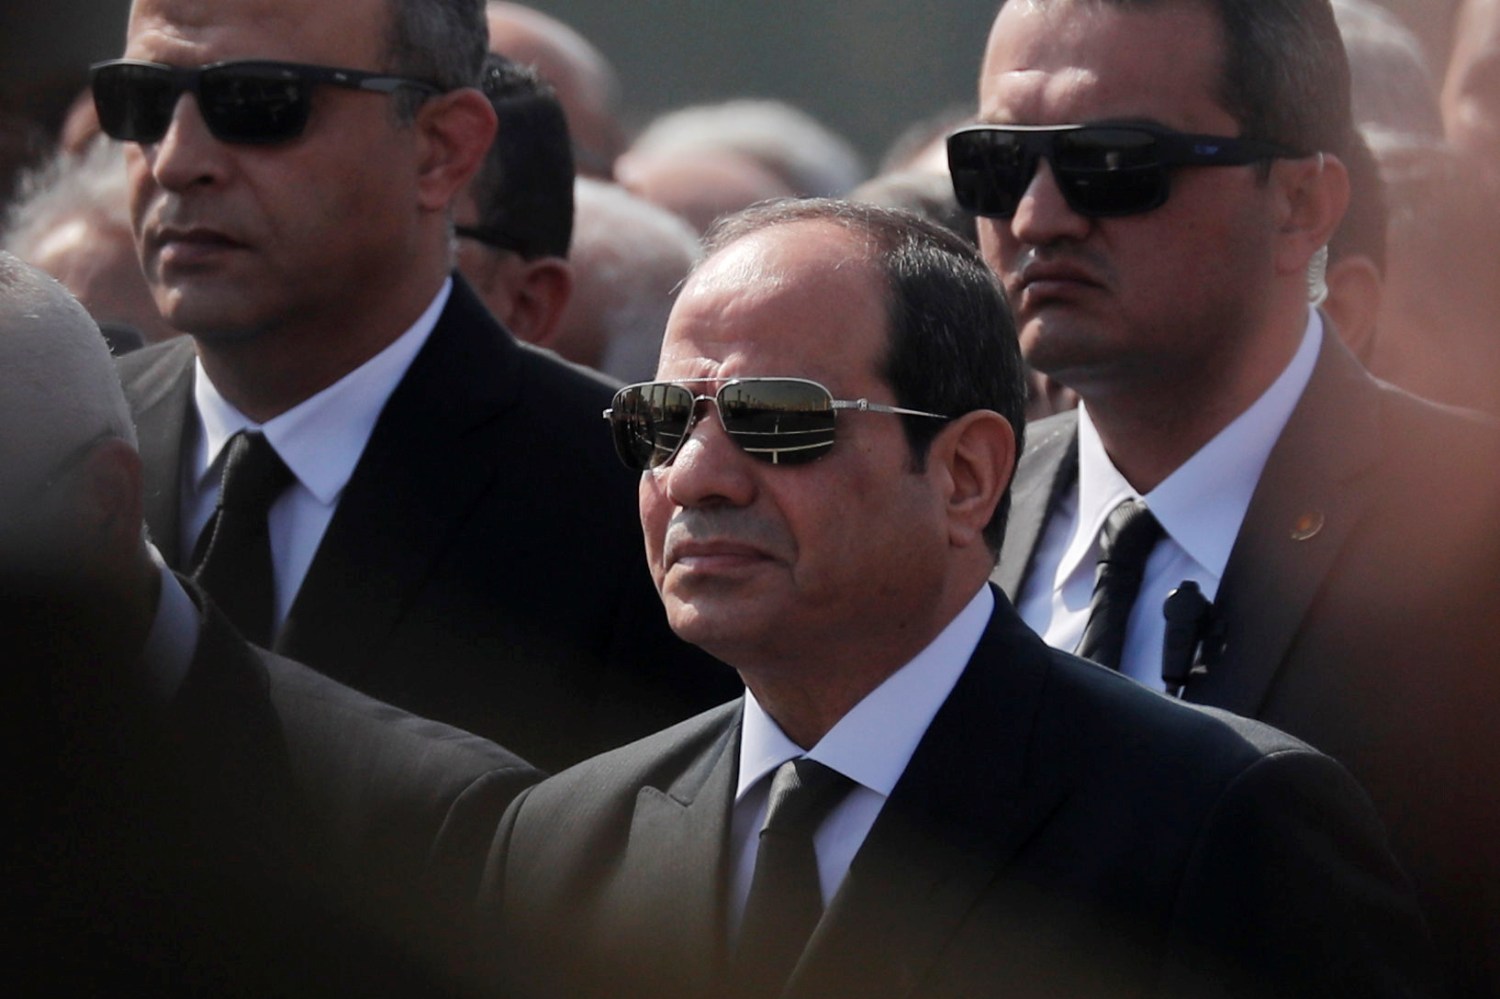 Egyptian President Abdel Fattah el-Sisi attends the funeral of former President Hosni Mubarak east of Cairo, Egypt February 26, 2020. REUTERS/Amr Abdallah Dalsh